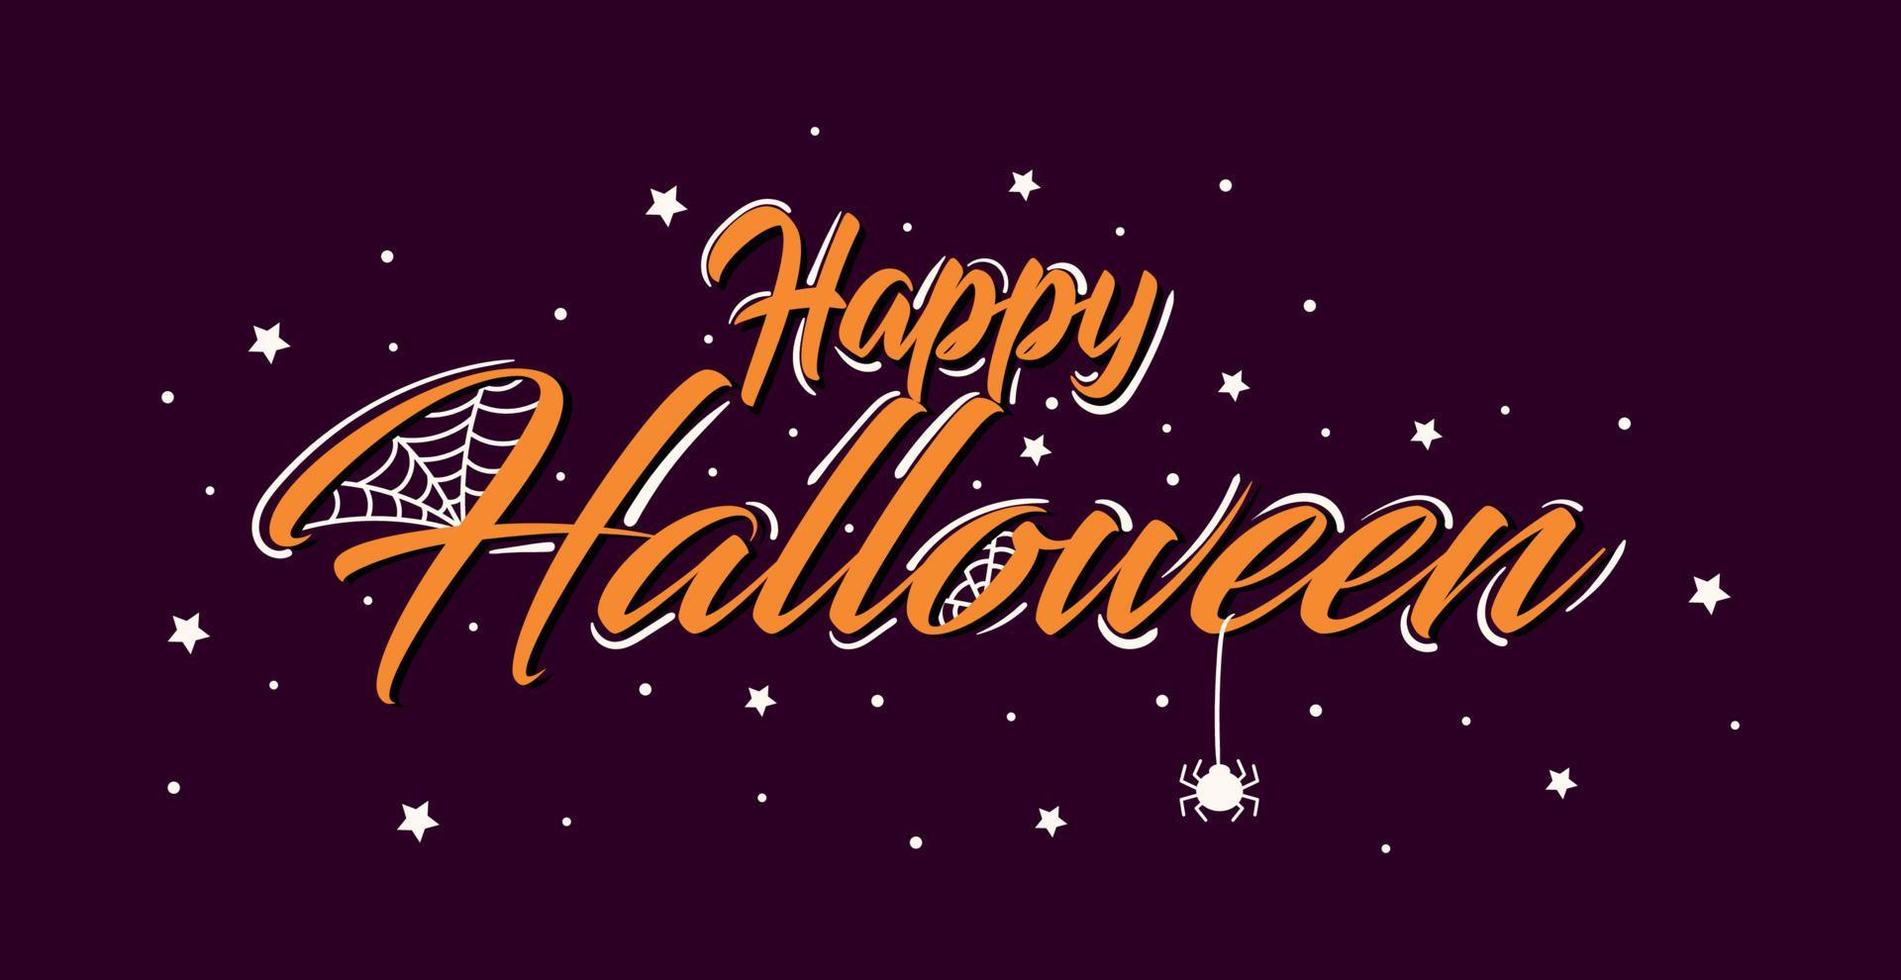 Halloween colorido brillante banner web felicitación - vector